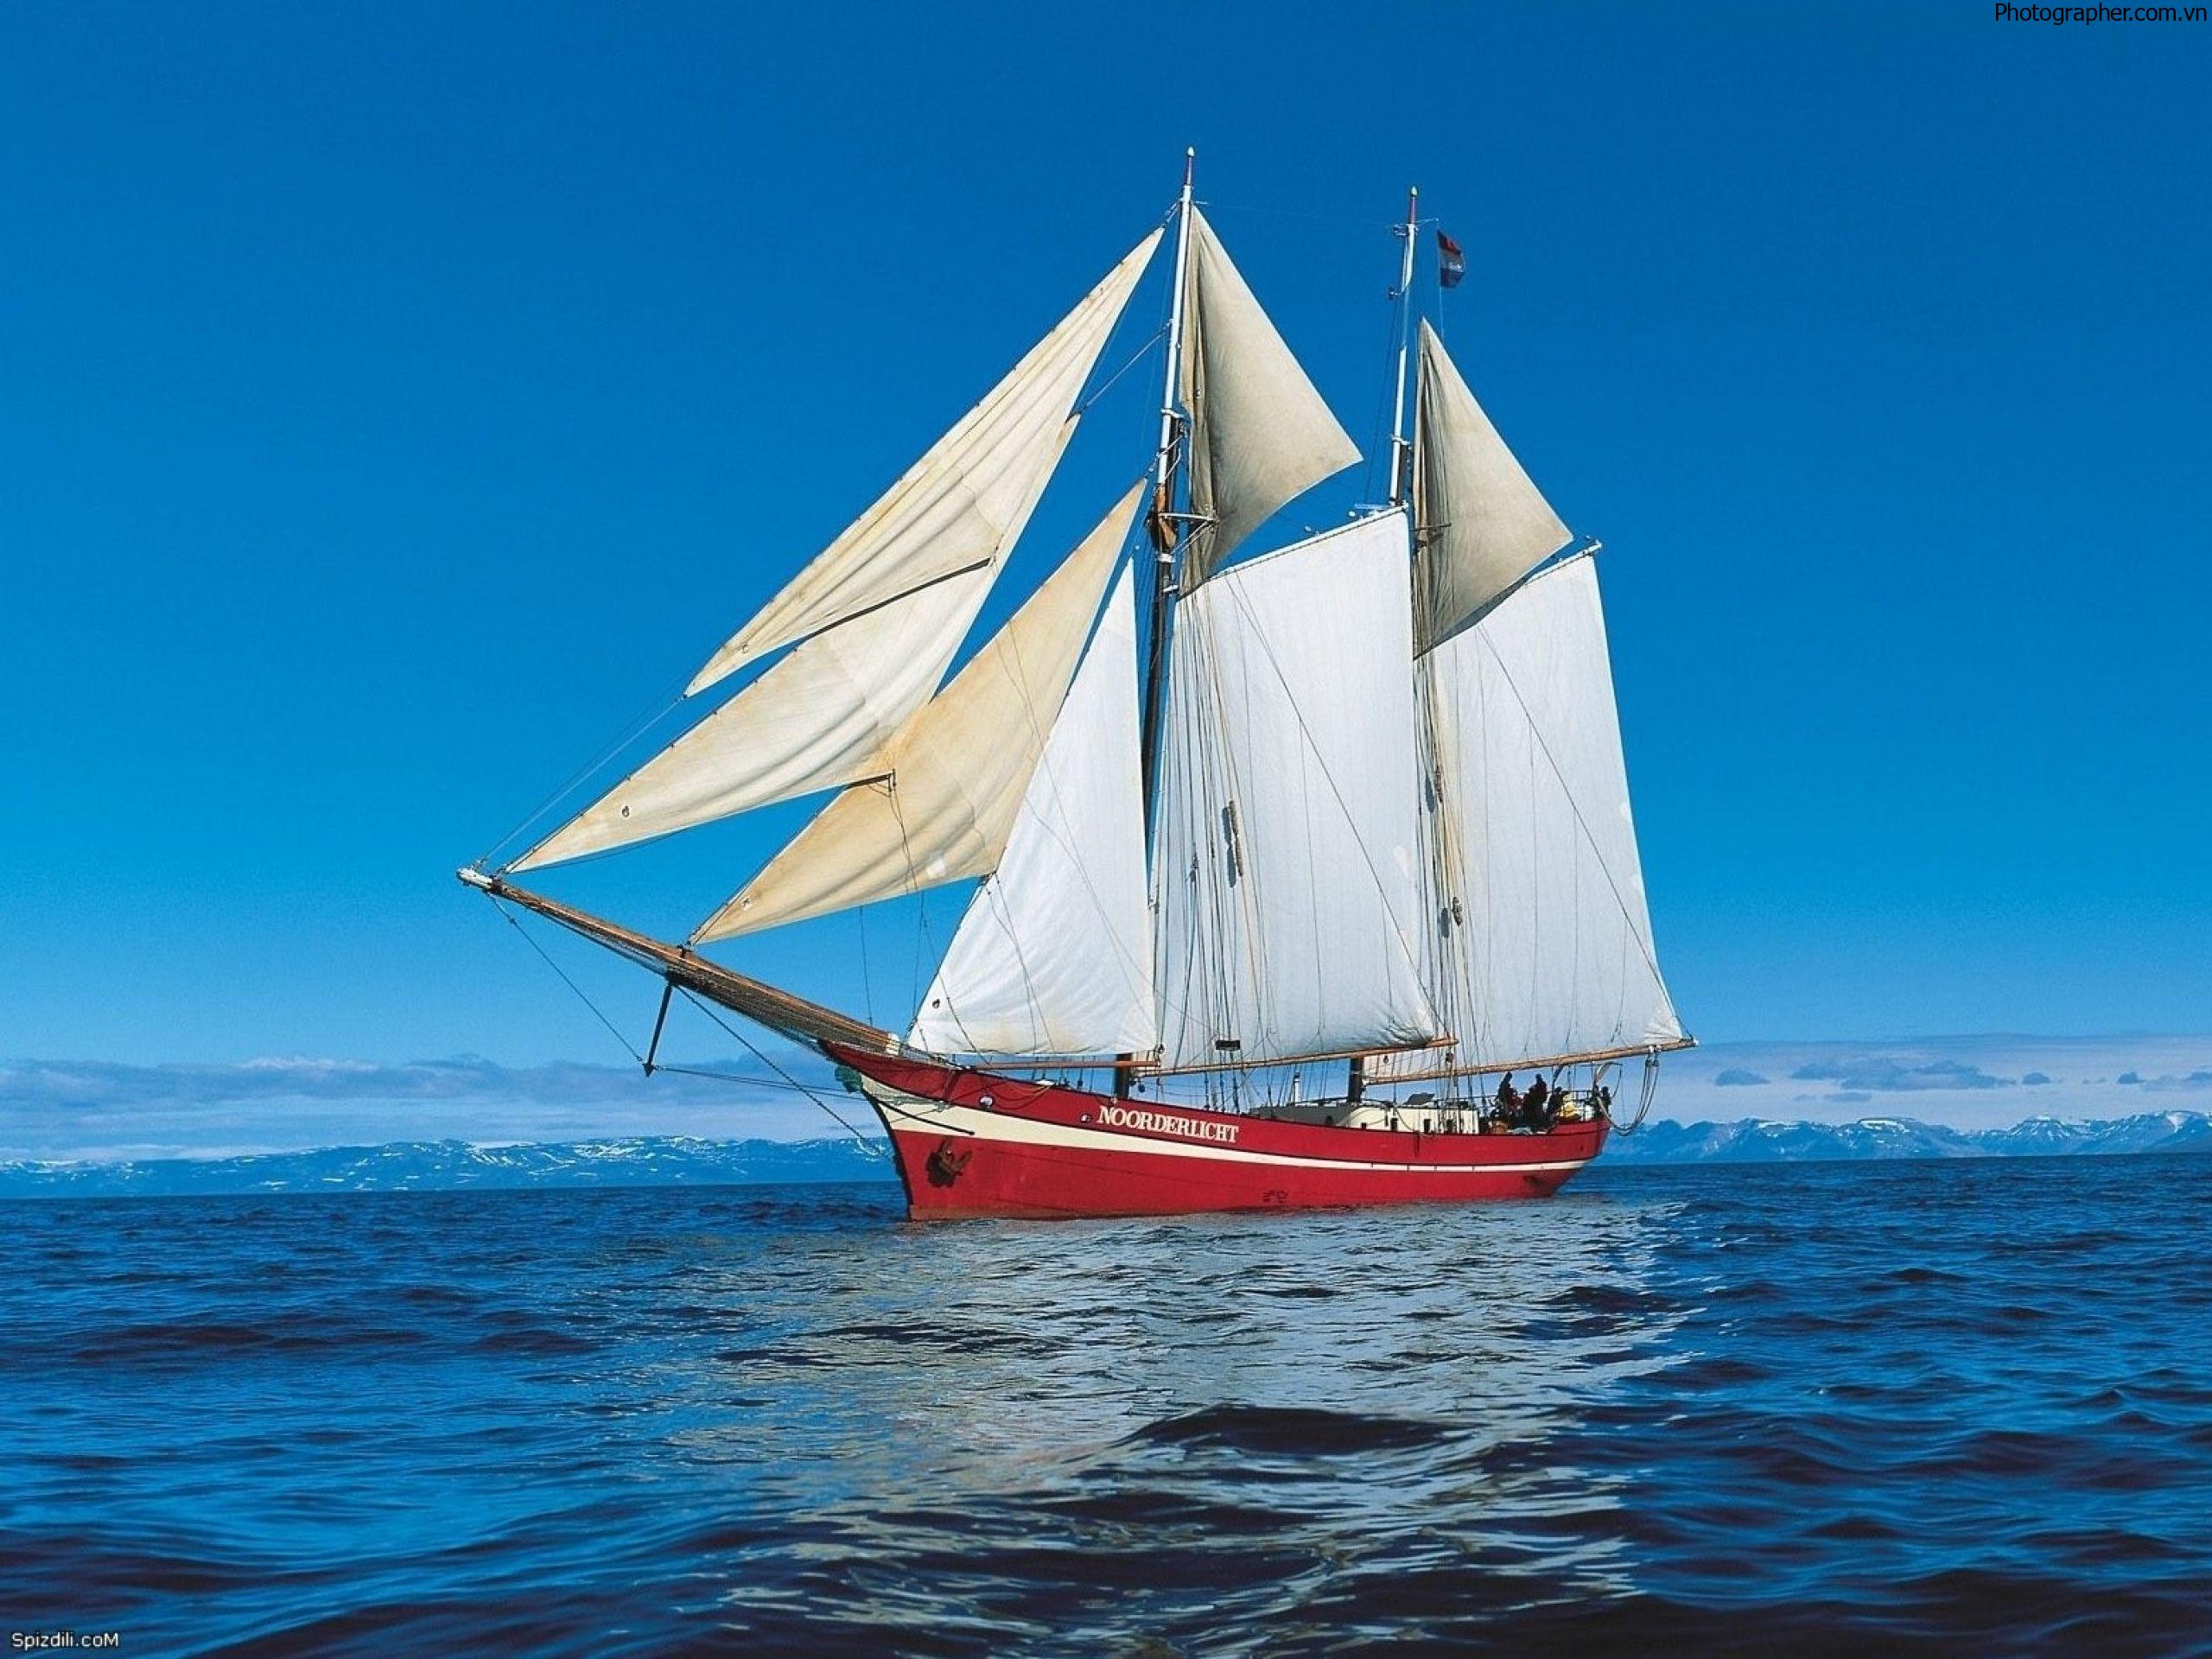 Hình ảnh thuyền buồm trên biển đẹp lãng mạn và nên thơ